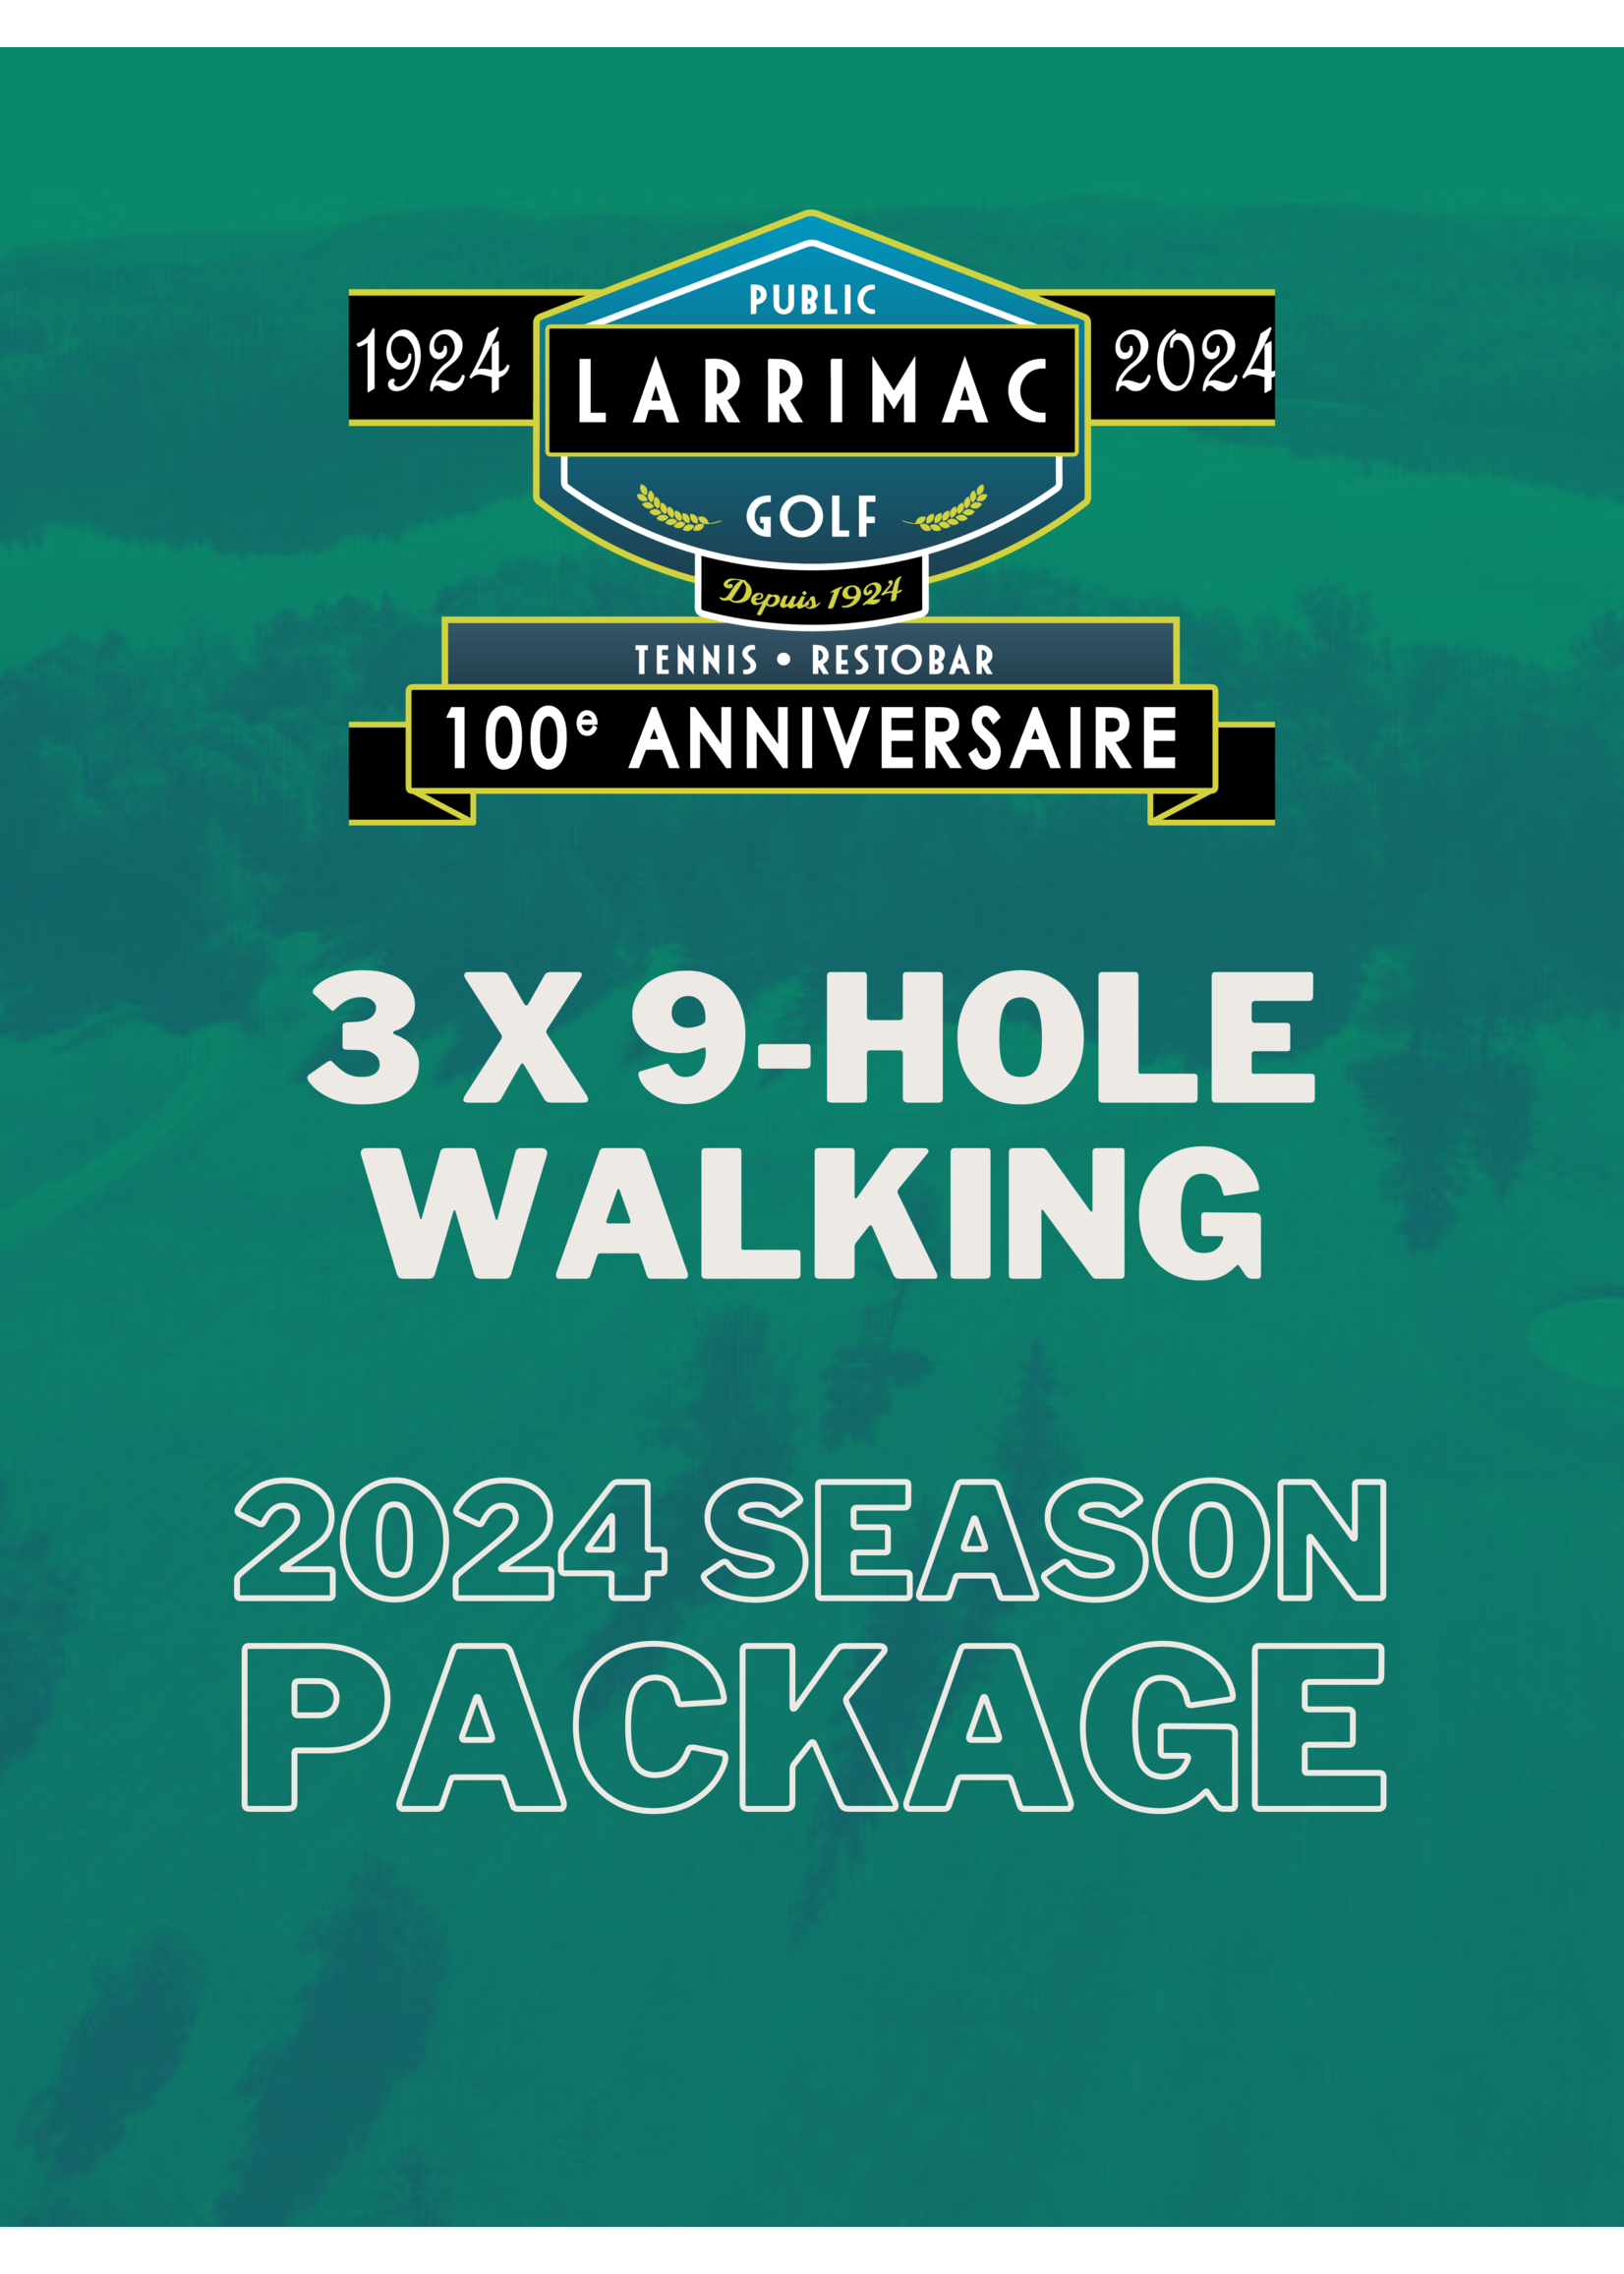 2024 packages 3x 9 Trous Marche Paquet (Saison 2024 5% de réduction !)